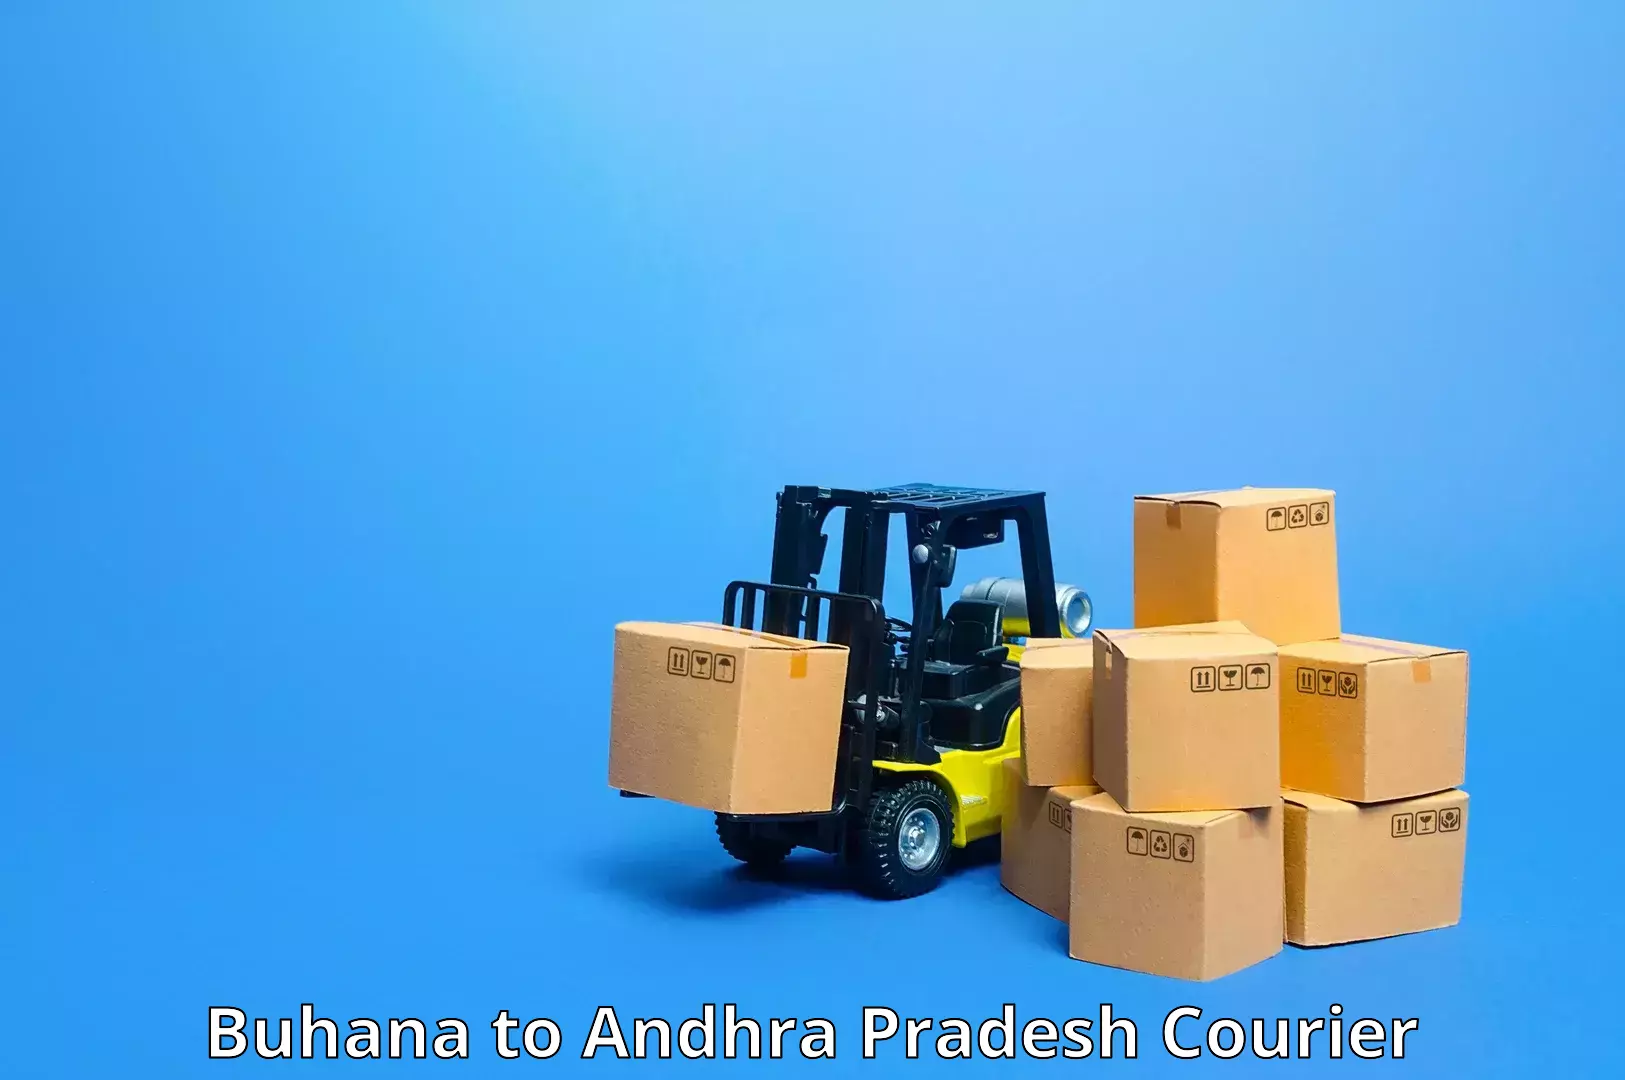 Express postal services Buhana to IIT Tirupati